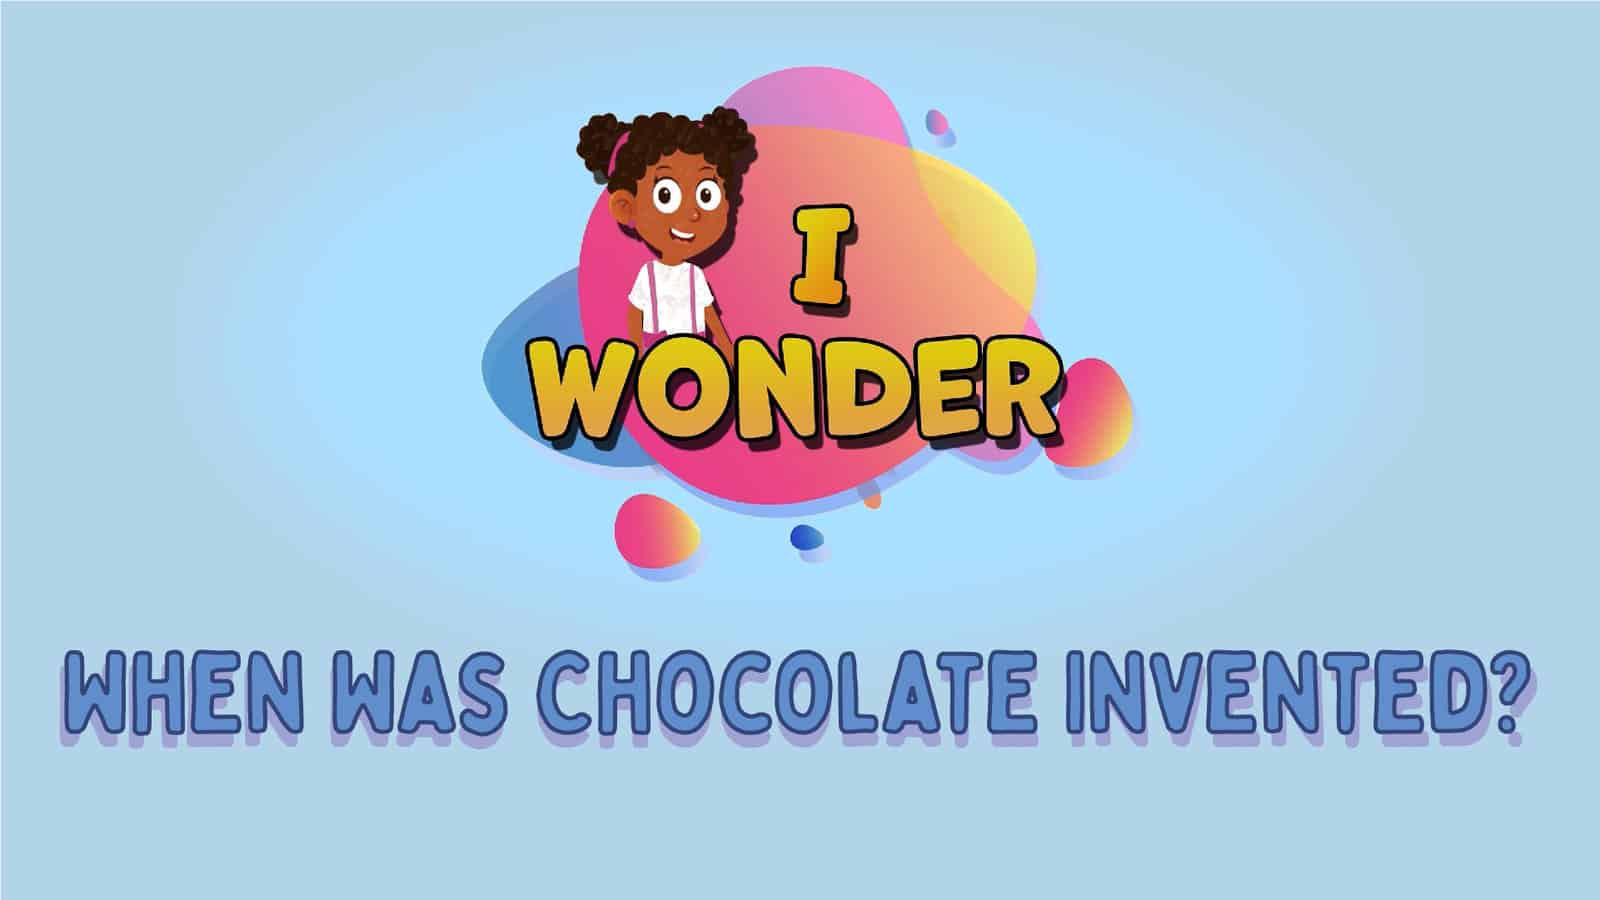 Chocolate Invented LearningMole